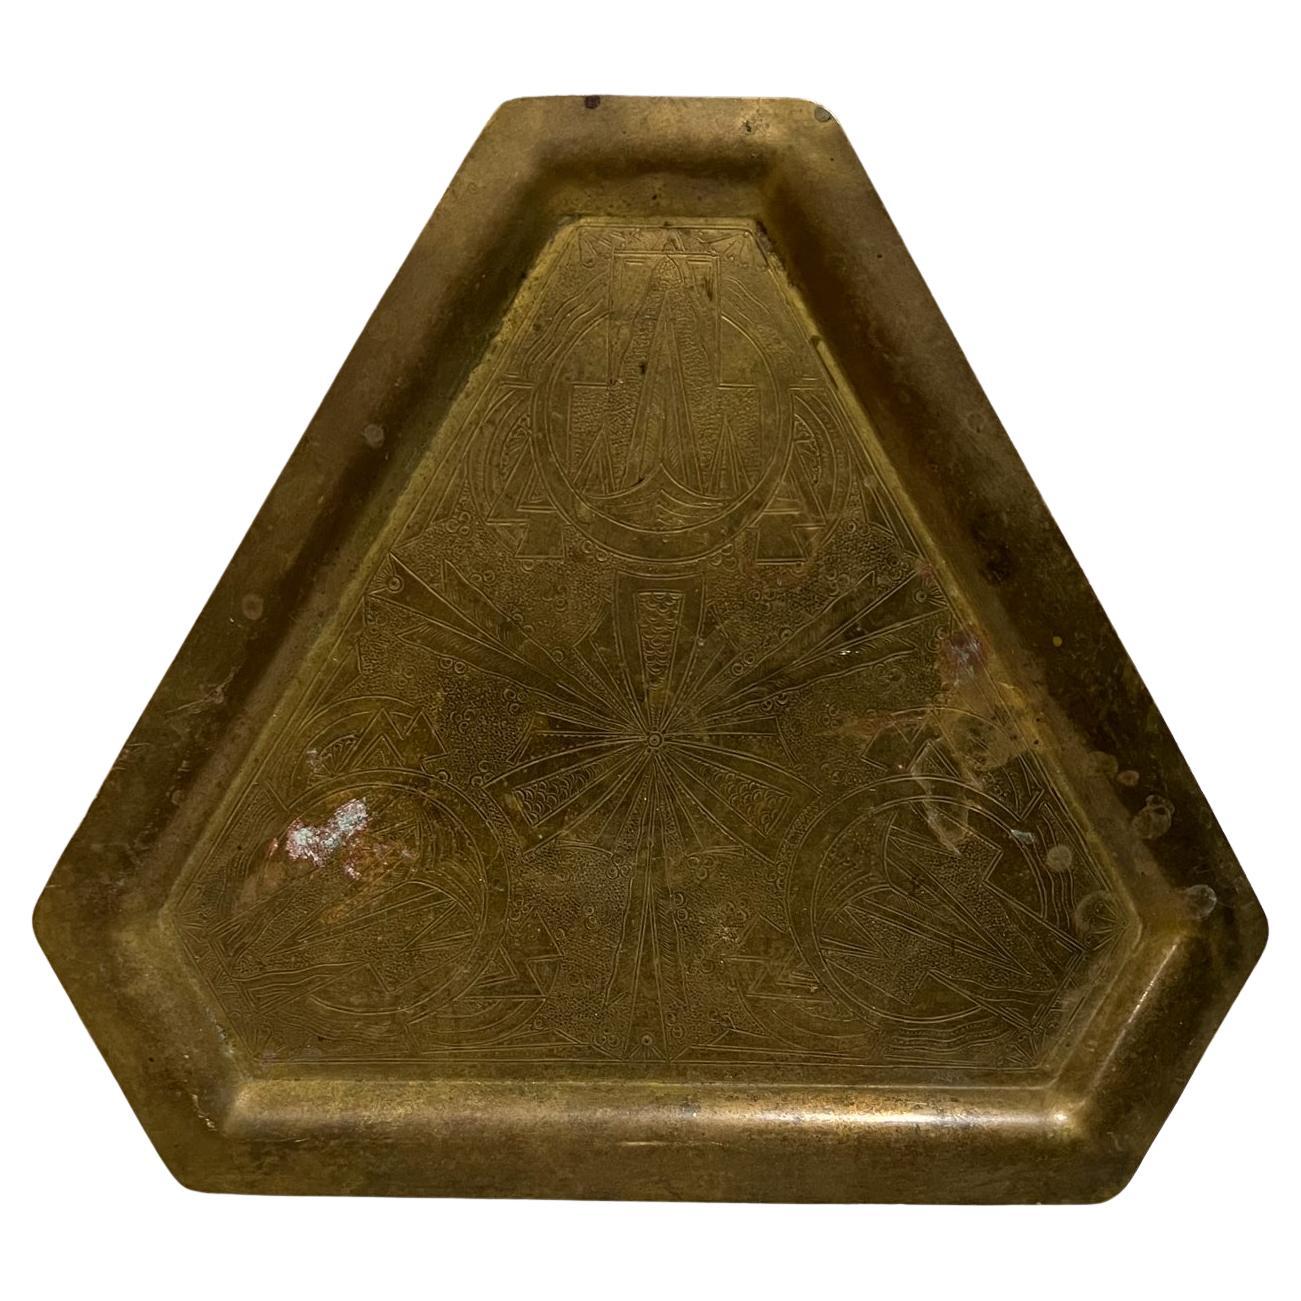 1970s Vintage Brass Triangular Serving Tray Modern Hammered Design